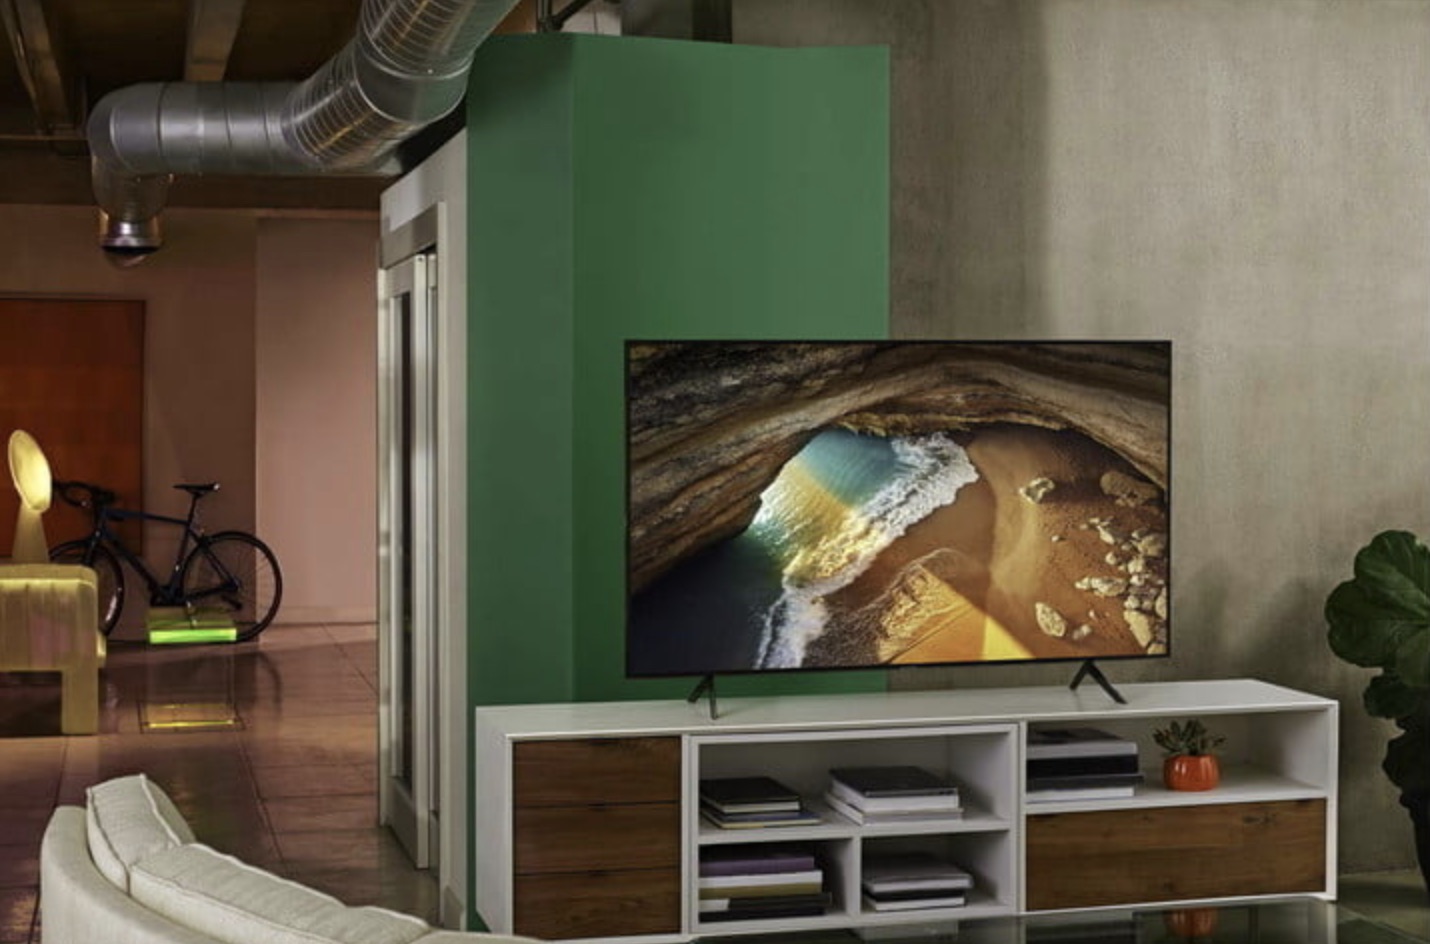 A TV Samsung Q70A 4K em um console de mídia em uma residência moderna em estilo loft.